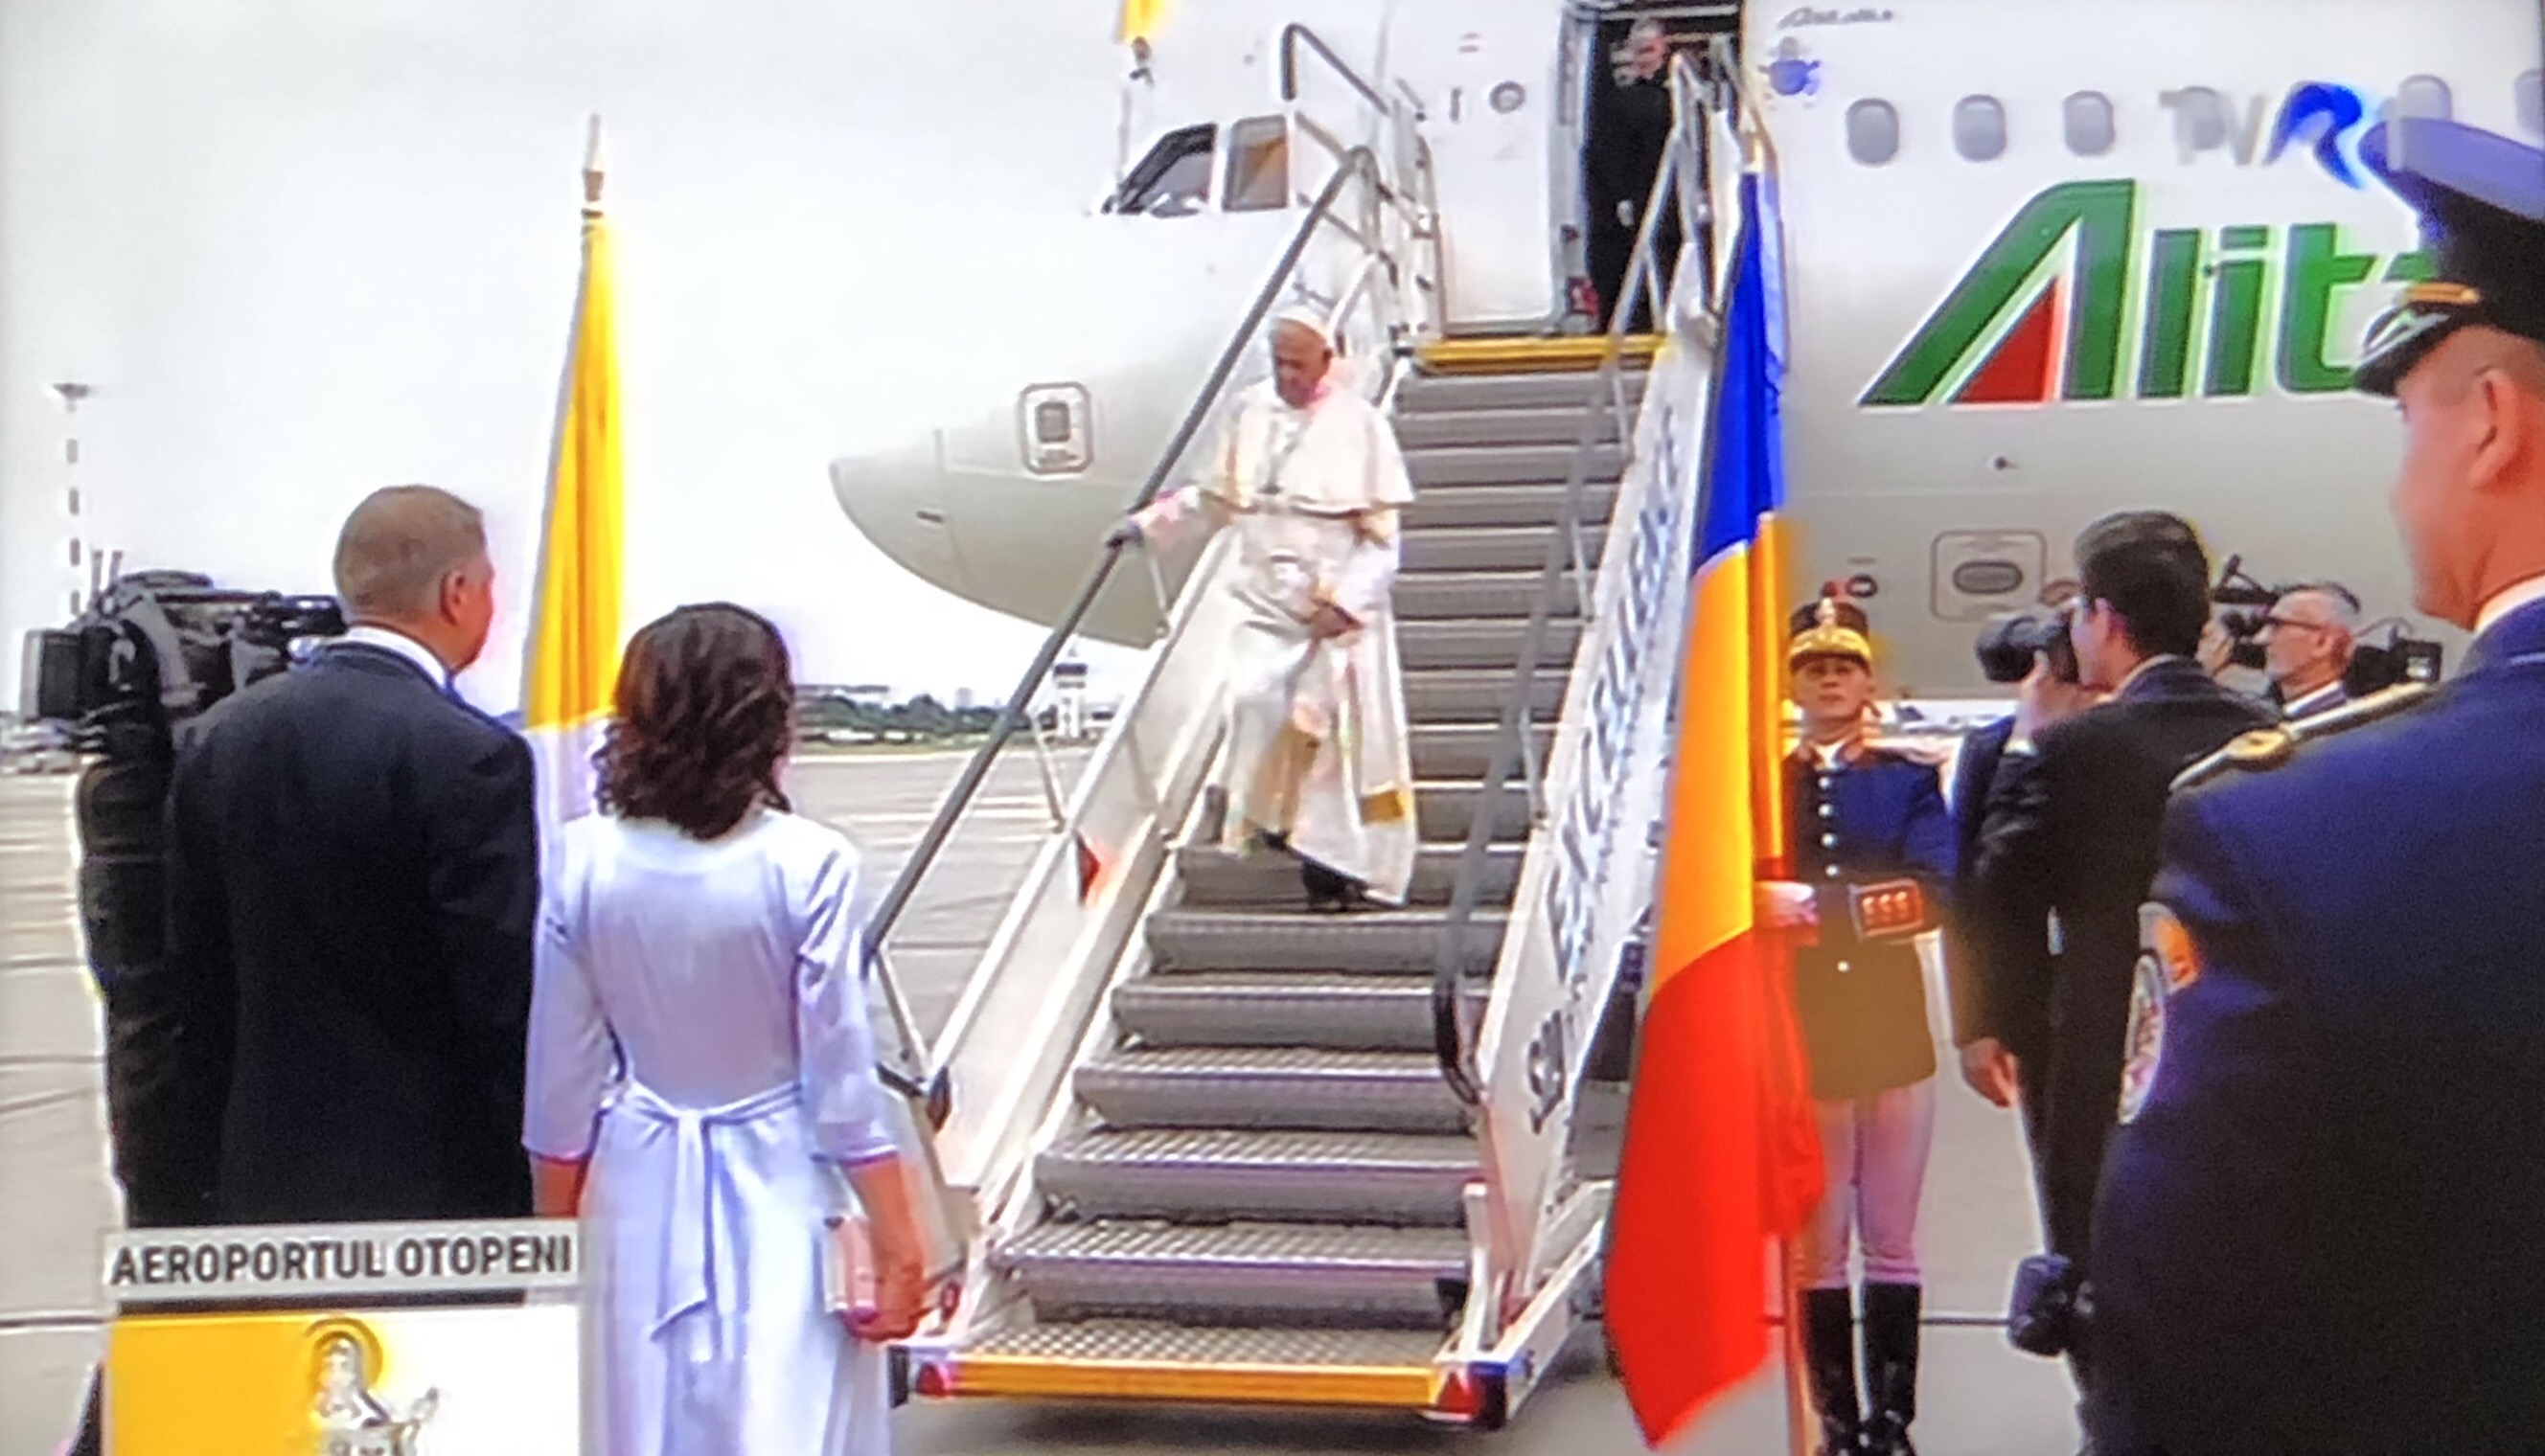 Arrivée du pape François en Roumanie